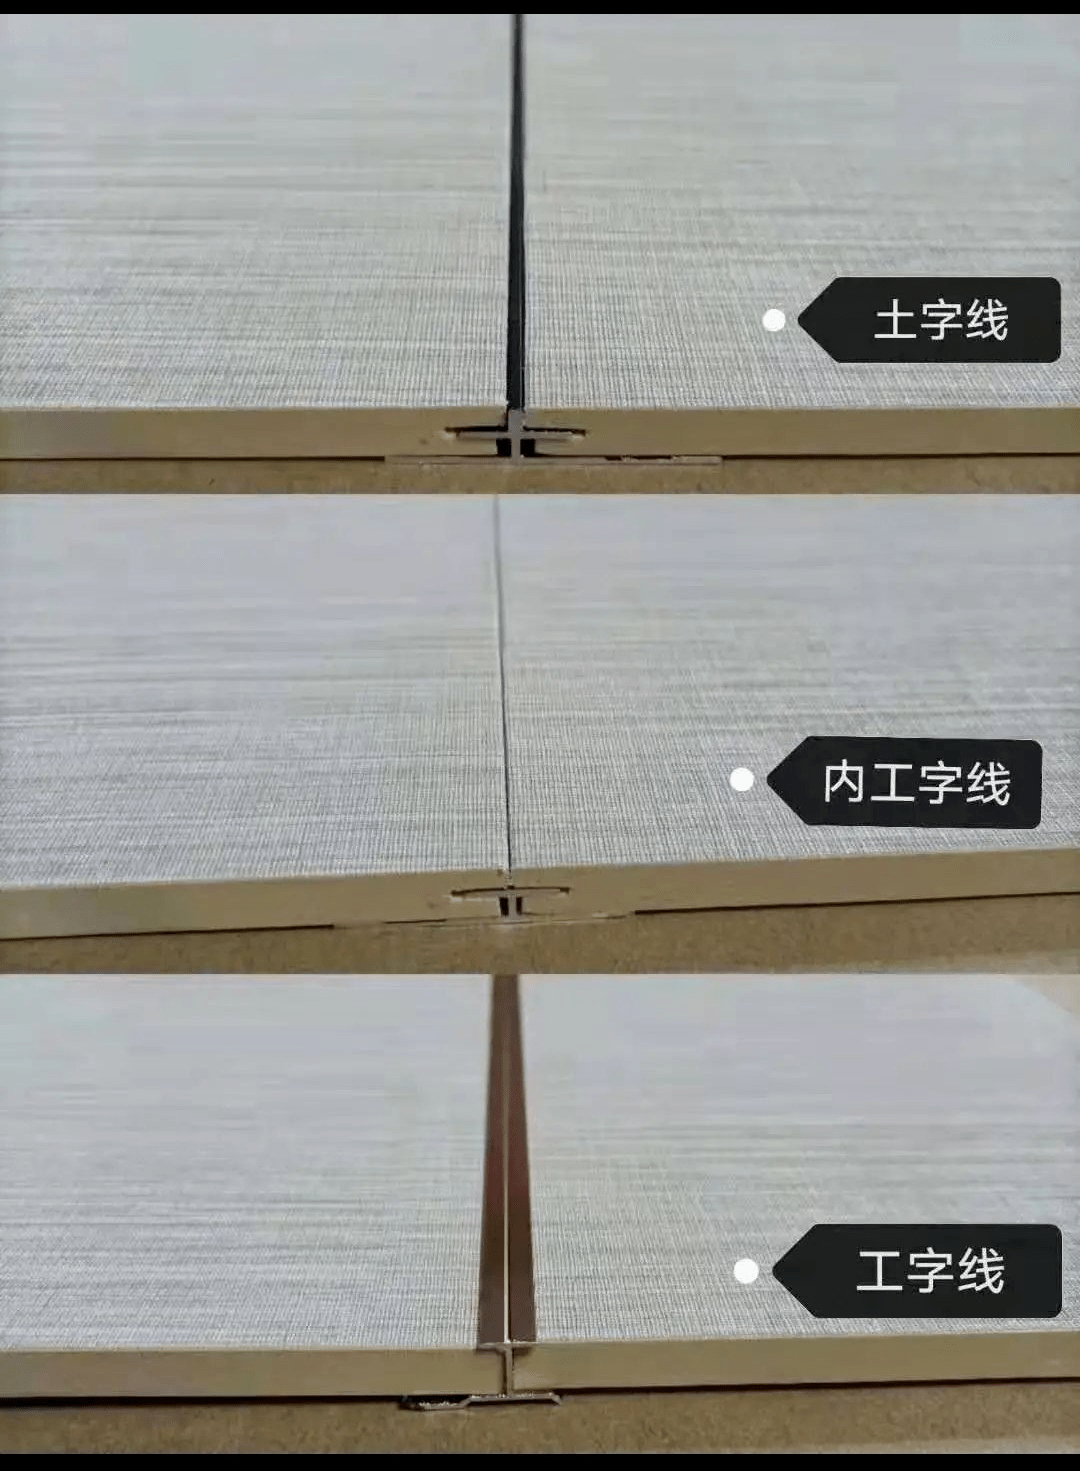 图片来源:嘉兴世右新材09 竹木空心产品照片和安装方式:双母槽公母槽